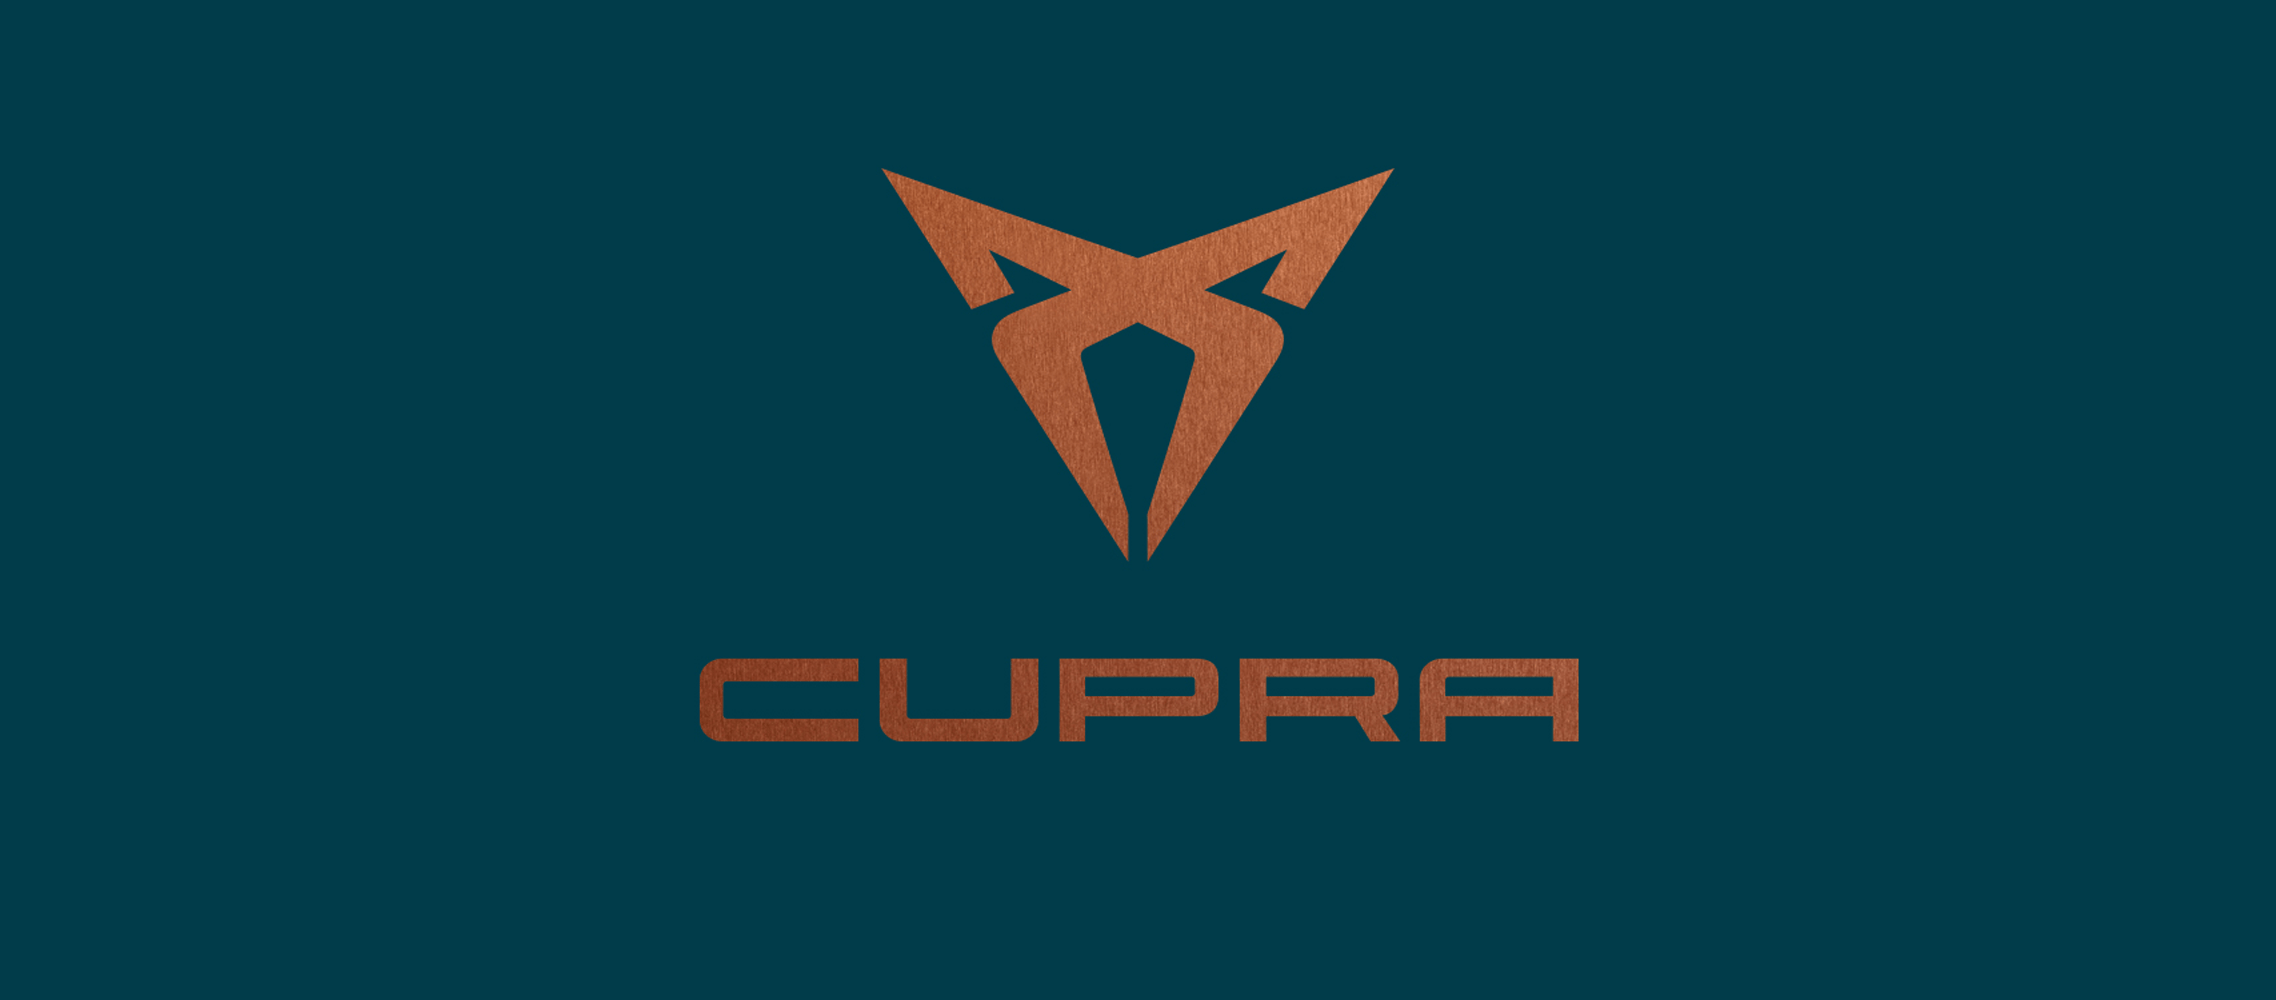 Logo marki Cupra zaprojektowano w stylu plemiennym